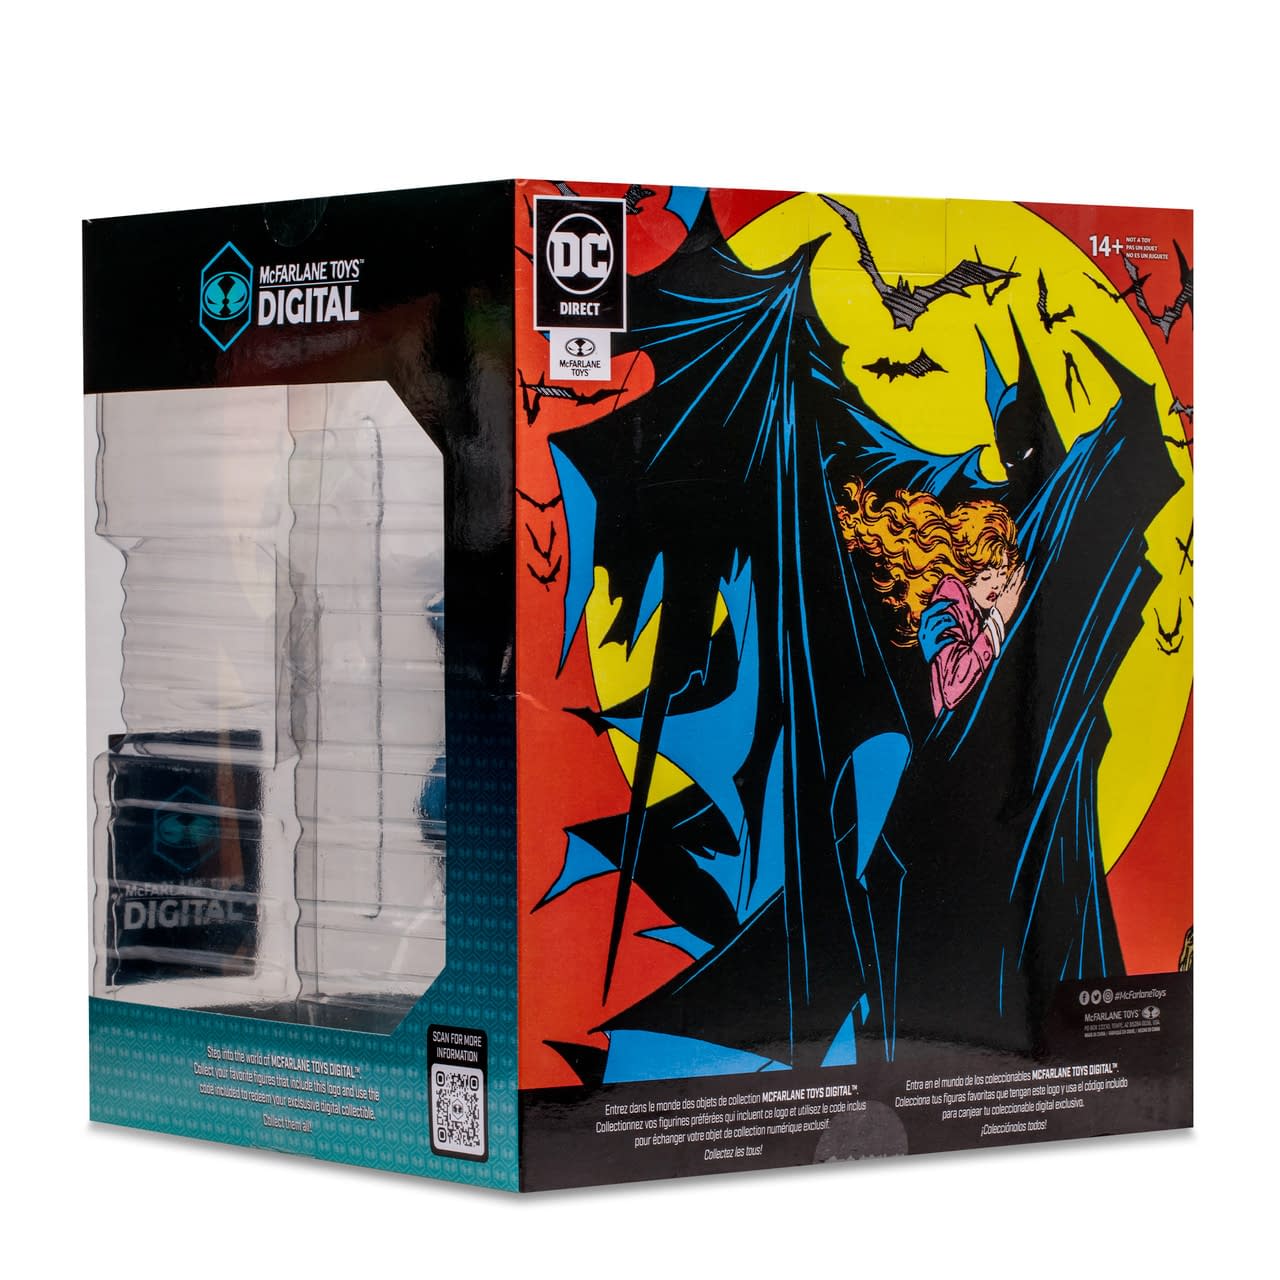 McFarlane Toys Unveils New Batman #423 Statue with Autograph Option